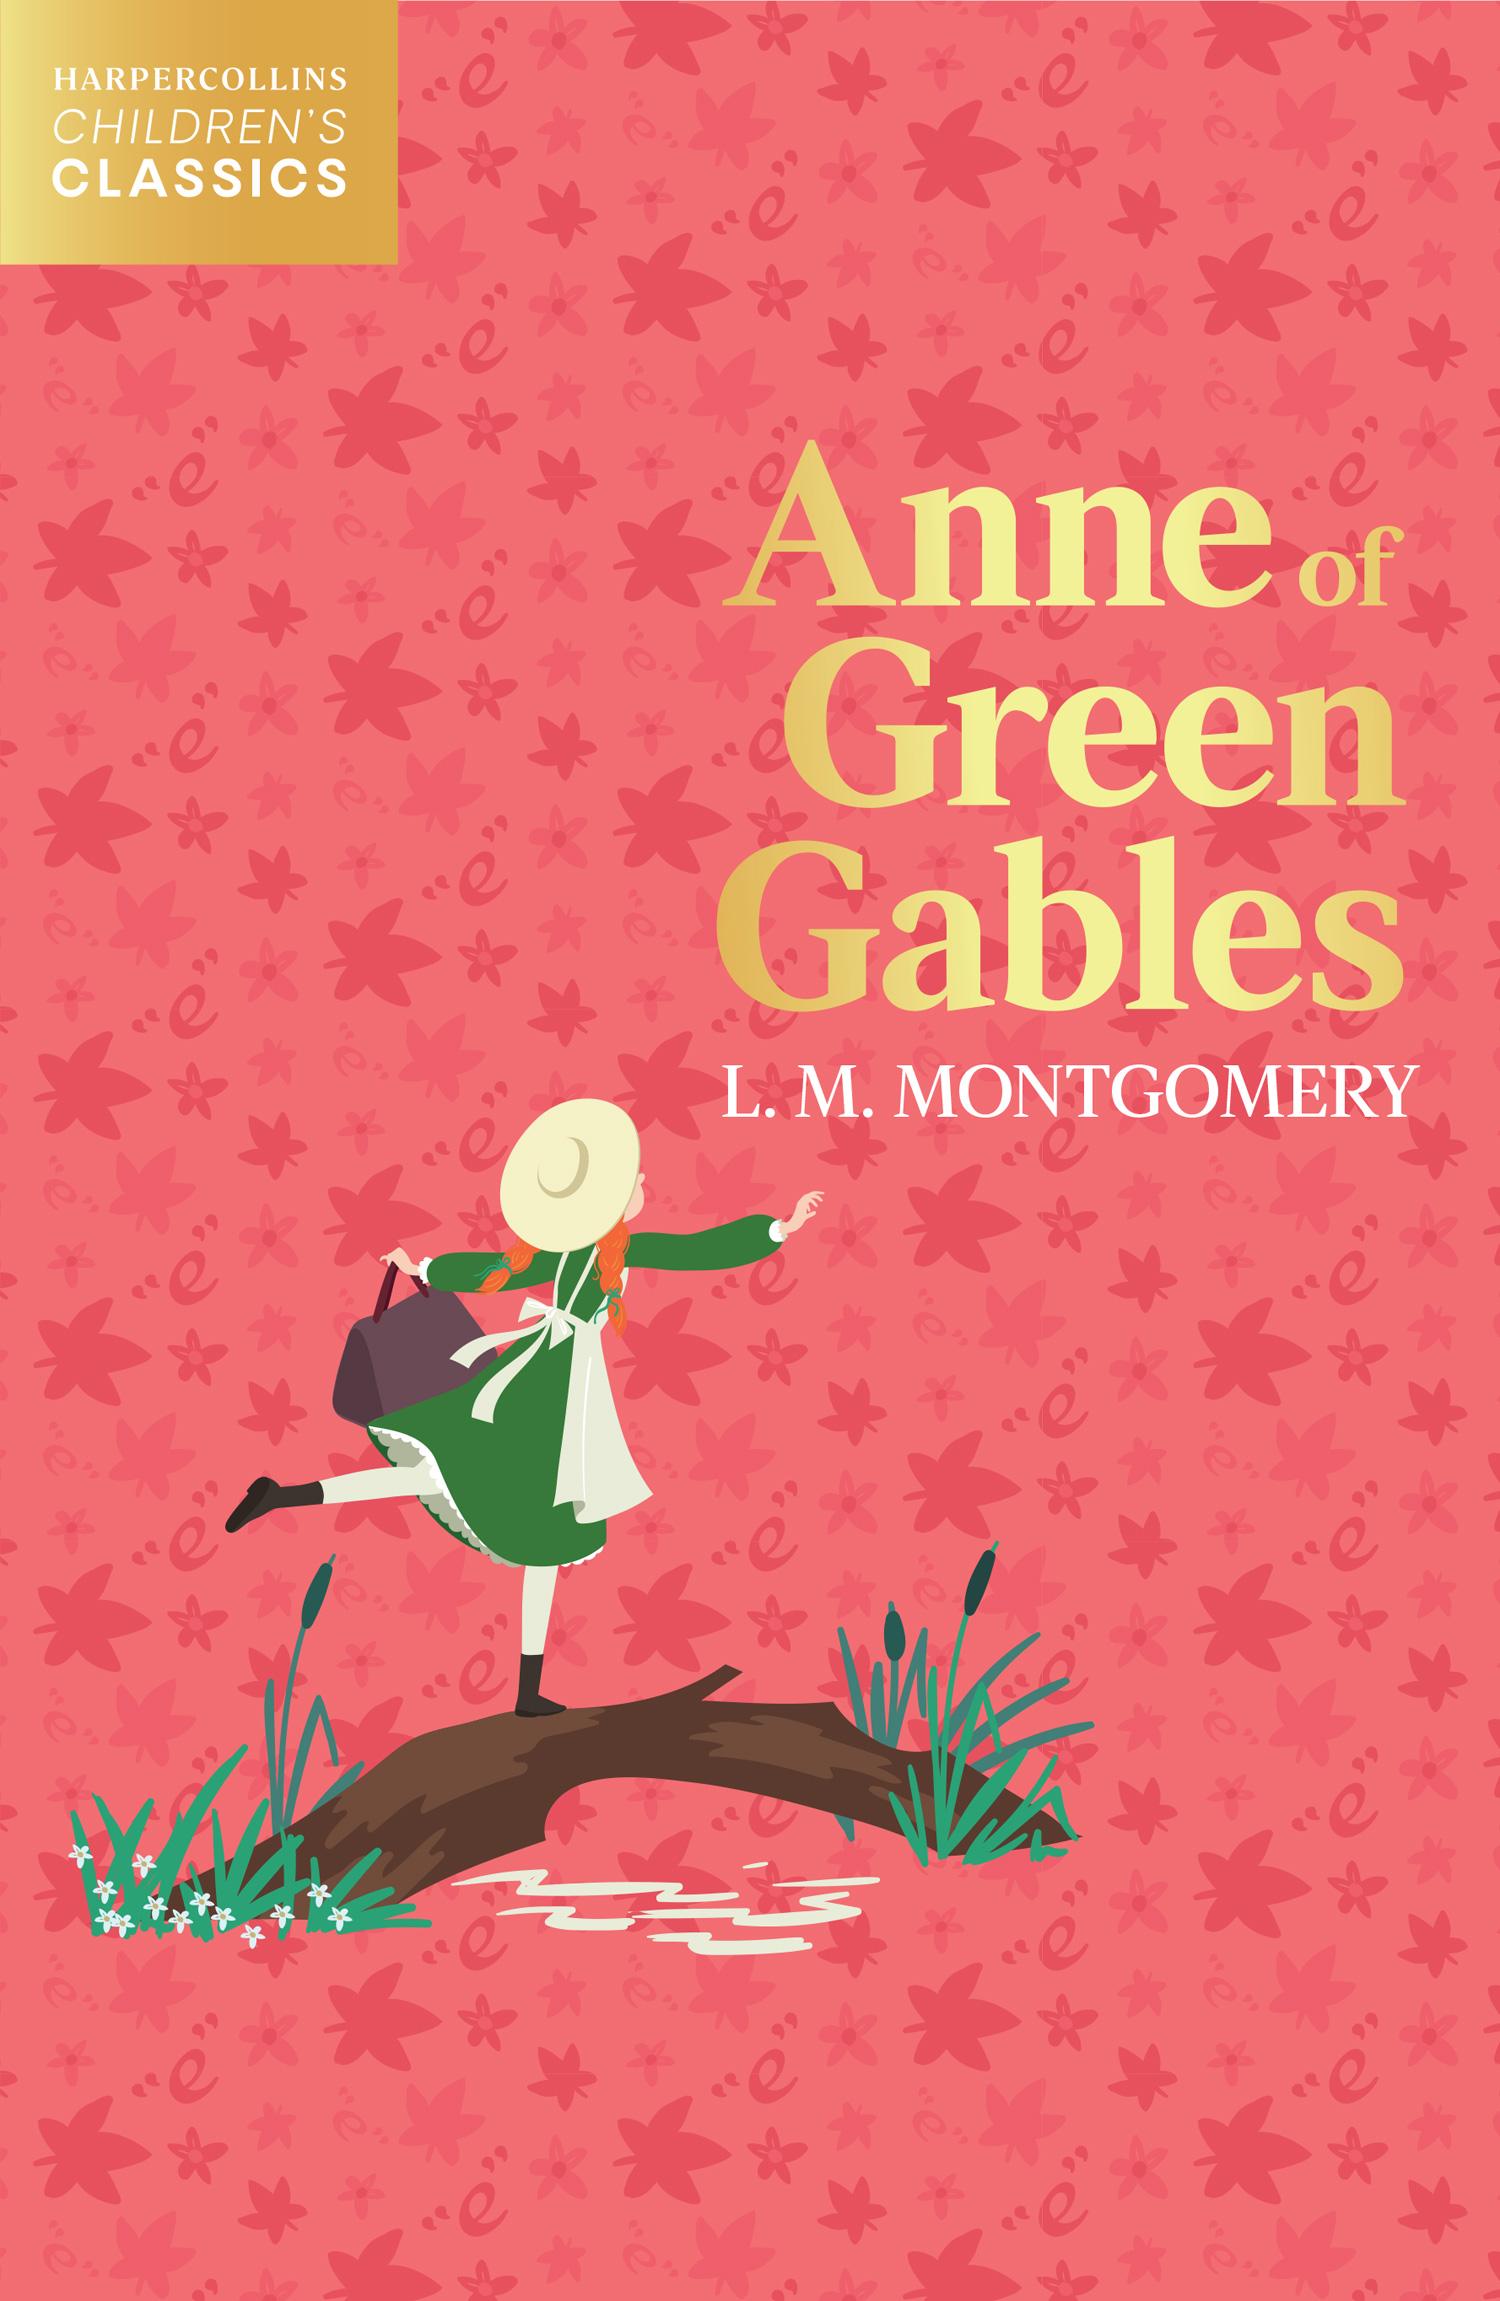 Anne of Green Gables / L. M. Montgomery / Taschenbuch / HarperCollins Children's Classics / 456 S. / Englisch / 2021 / HarperCollins Publishers / EAN 9780008514266 - Montgomery, L. M.